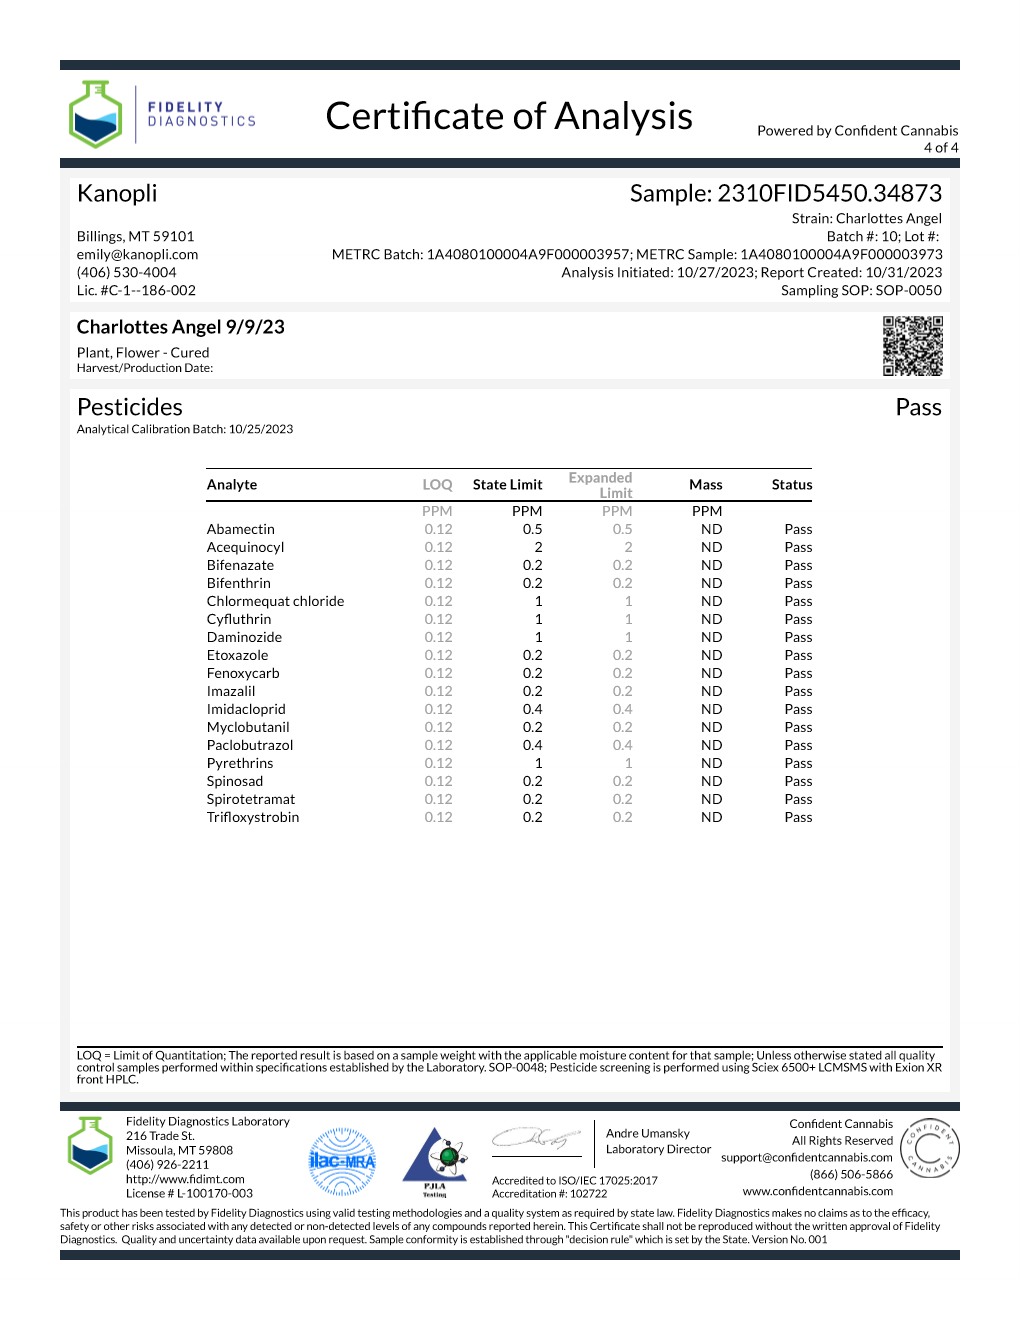 Charlotte's Angel - Hybrid HIgh CBD shake (14.48% CBD) Sept. 2023 (5 grams)